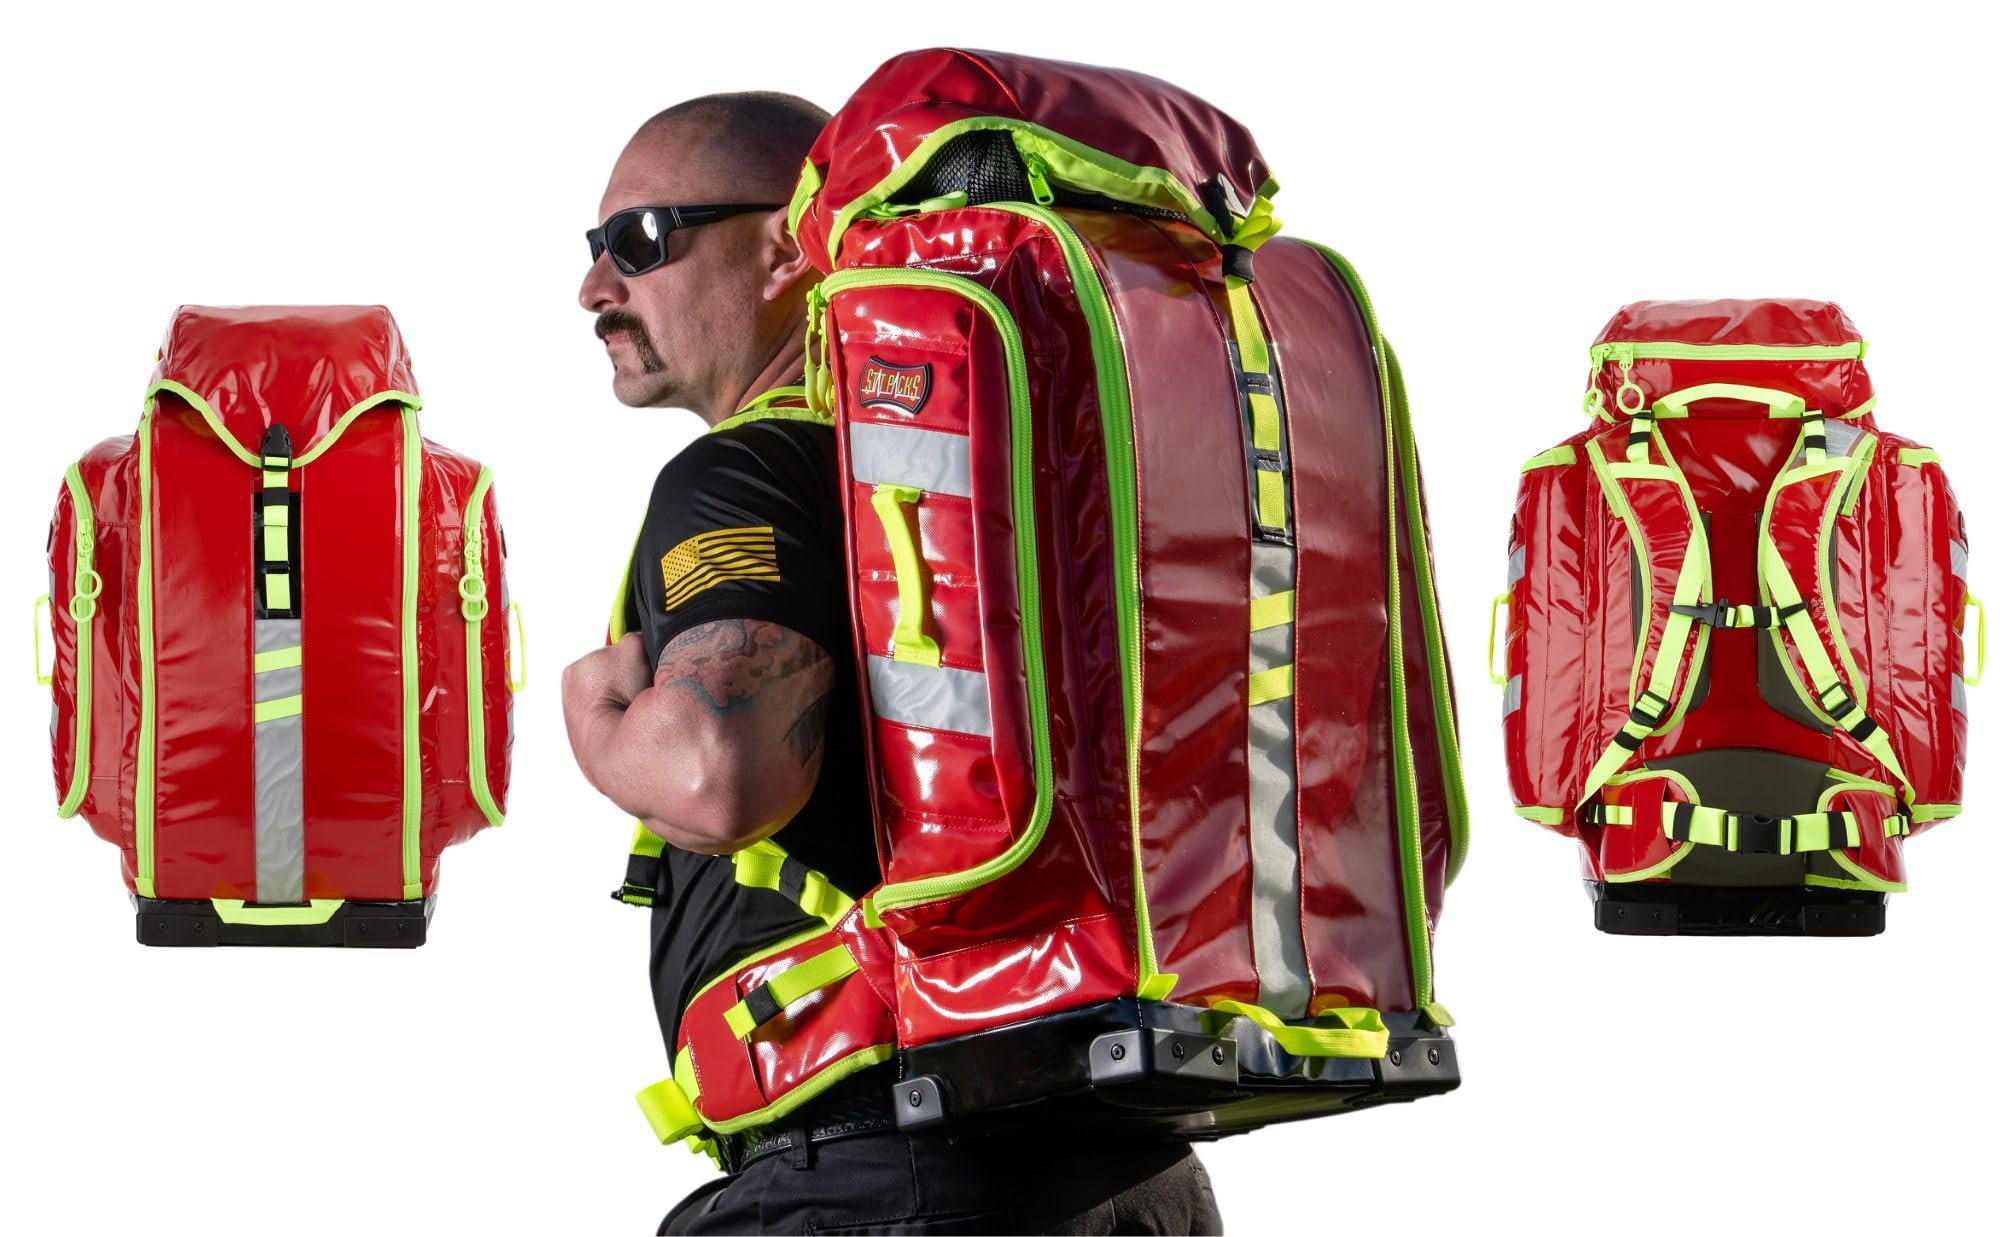 Statpacks New 2023 G3+ Backup Red EMT Medic Backpack BLS ALS Trauma Bag for EMS, Police, Firefighters